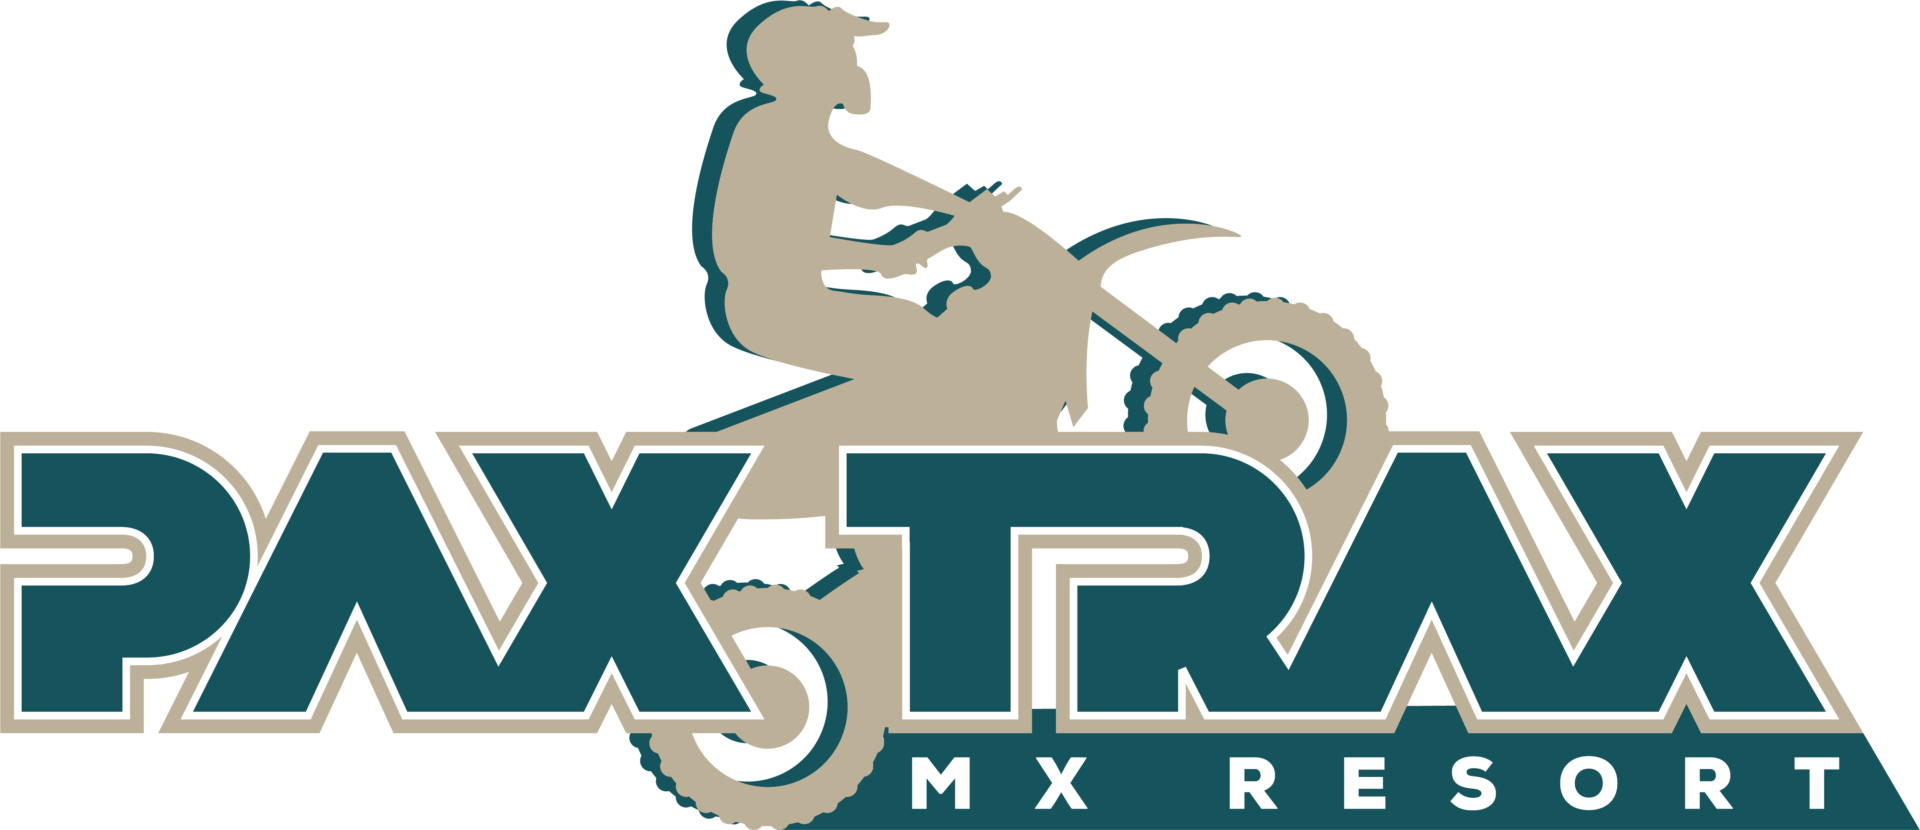 CX-72198_Pax Trax MX Resort_FINAL